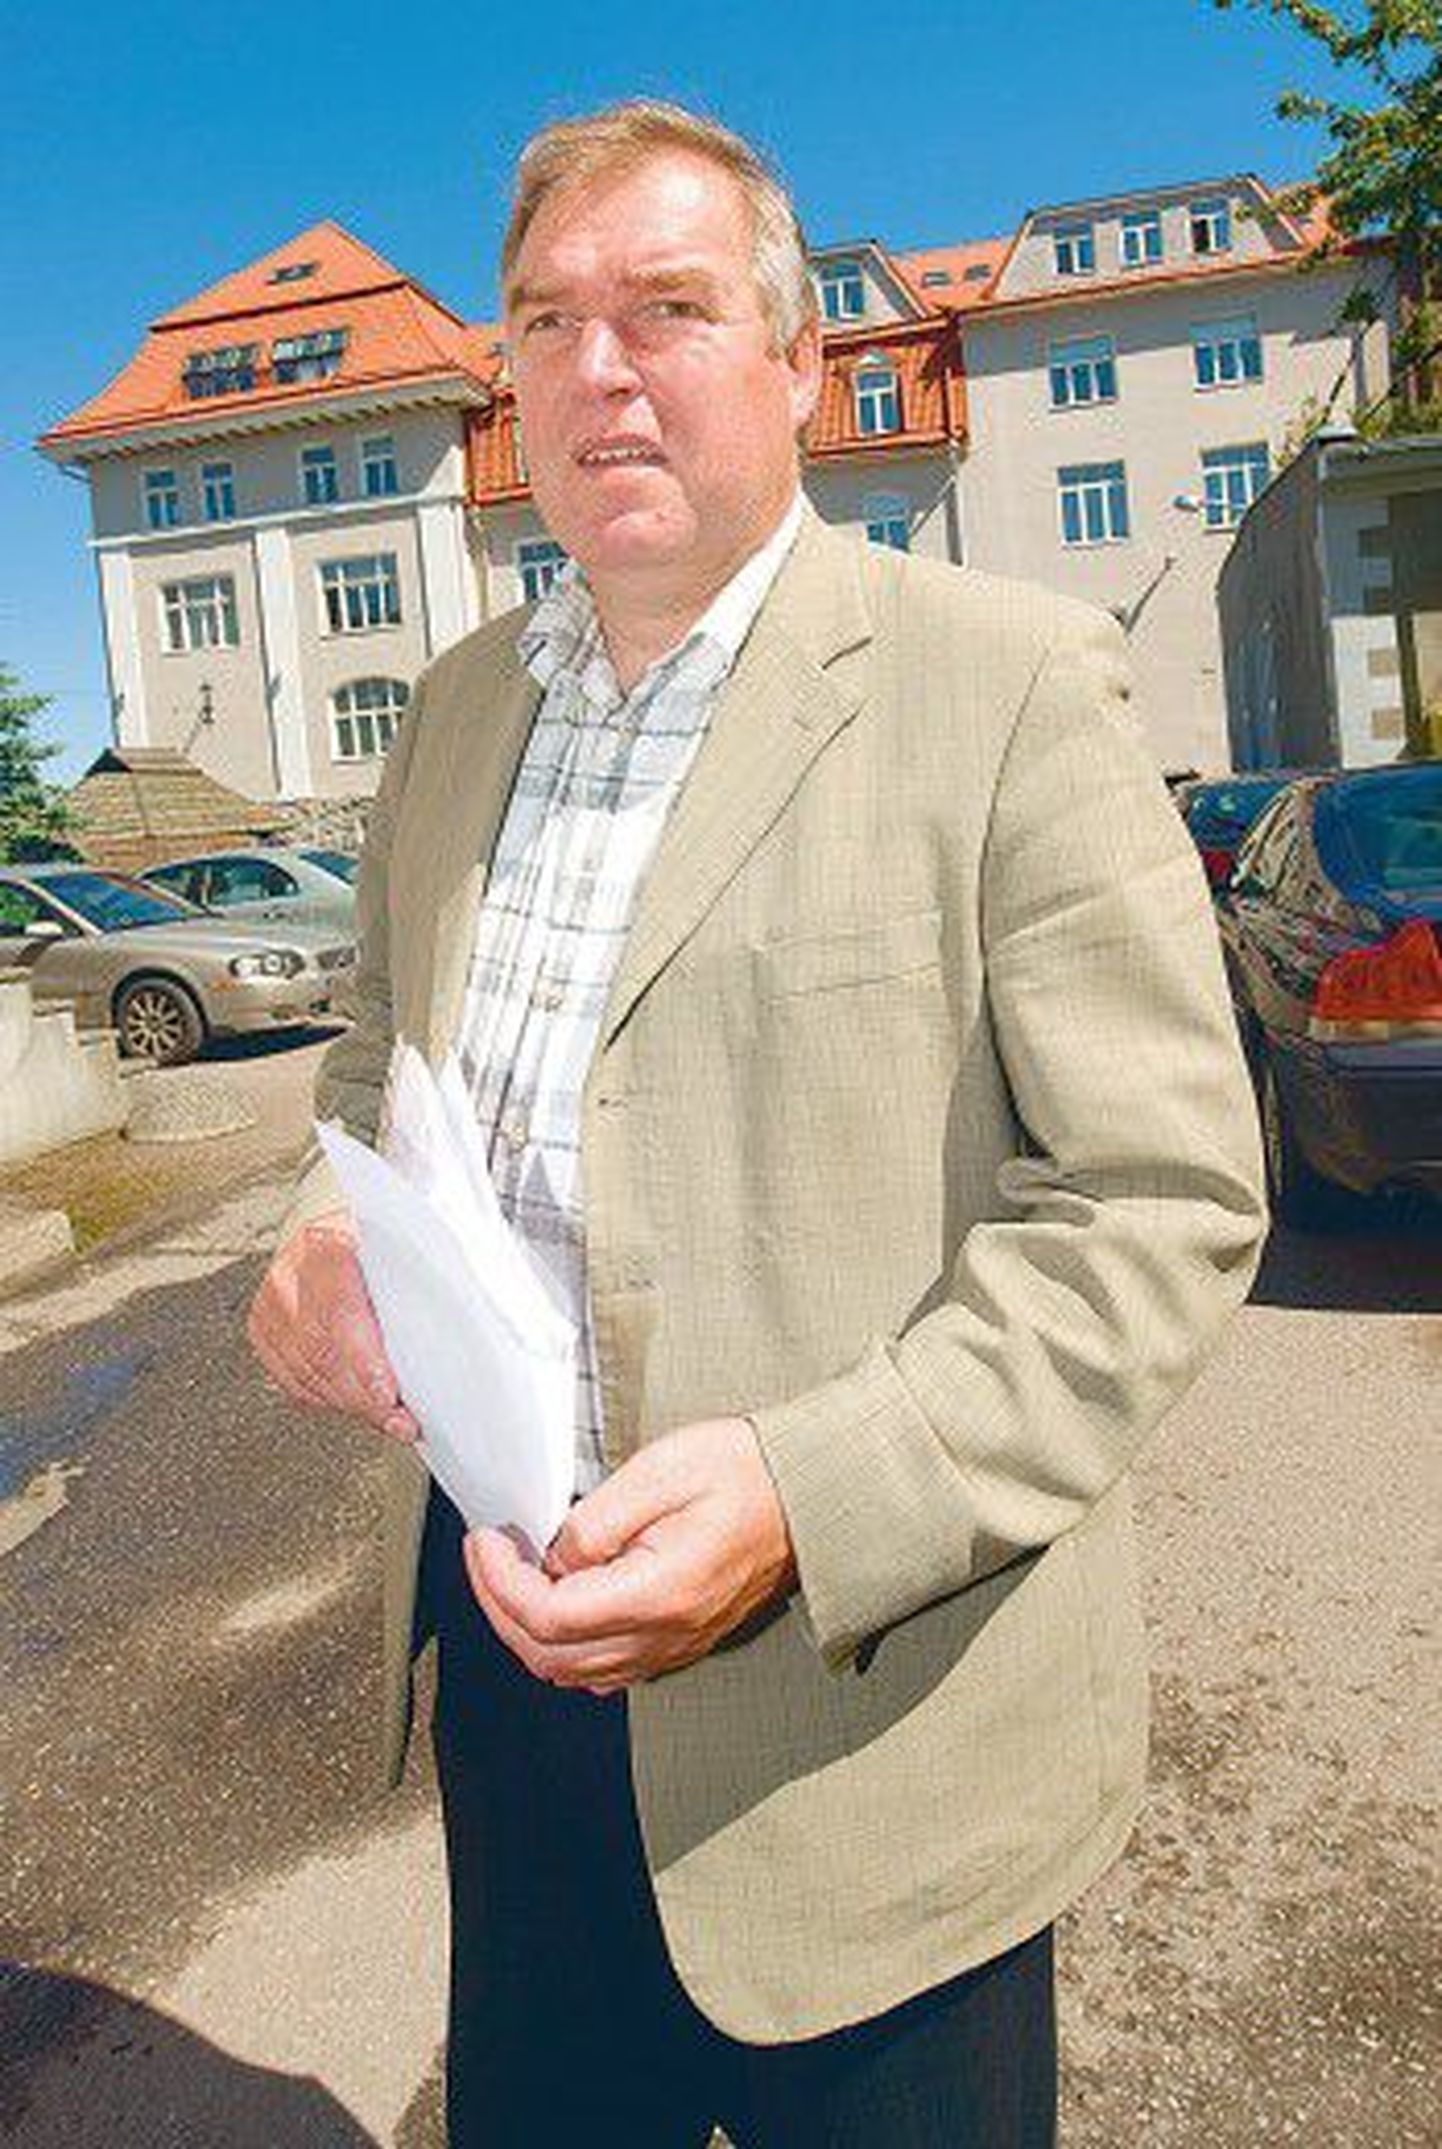 Бывший директор таллиннской службы строительного надзора Райн Сейер рассказал прессе, как «неугодным» лицам чинятся препятствия для выдачи разрешения на строительство.